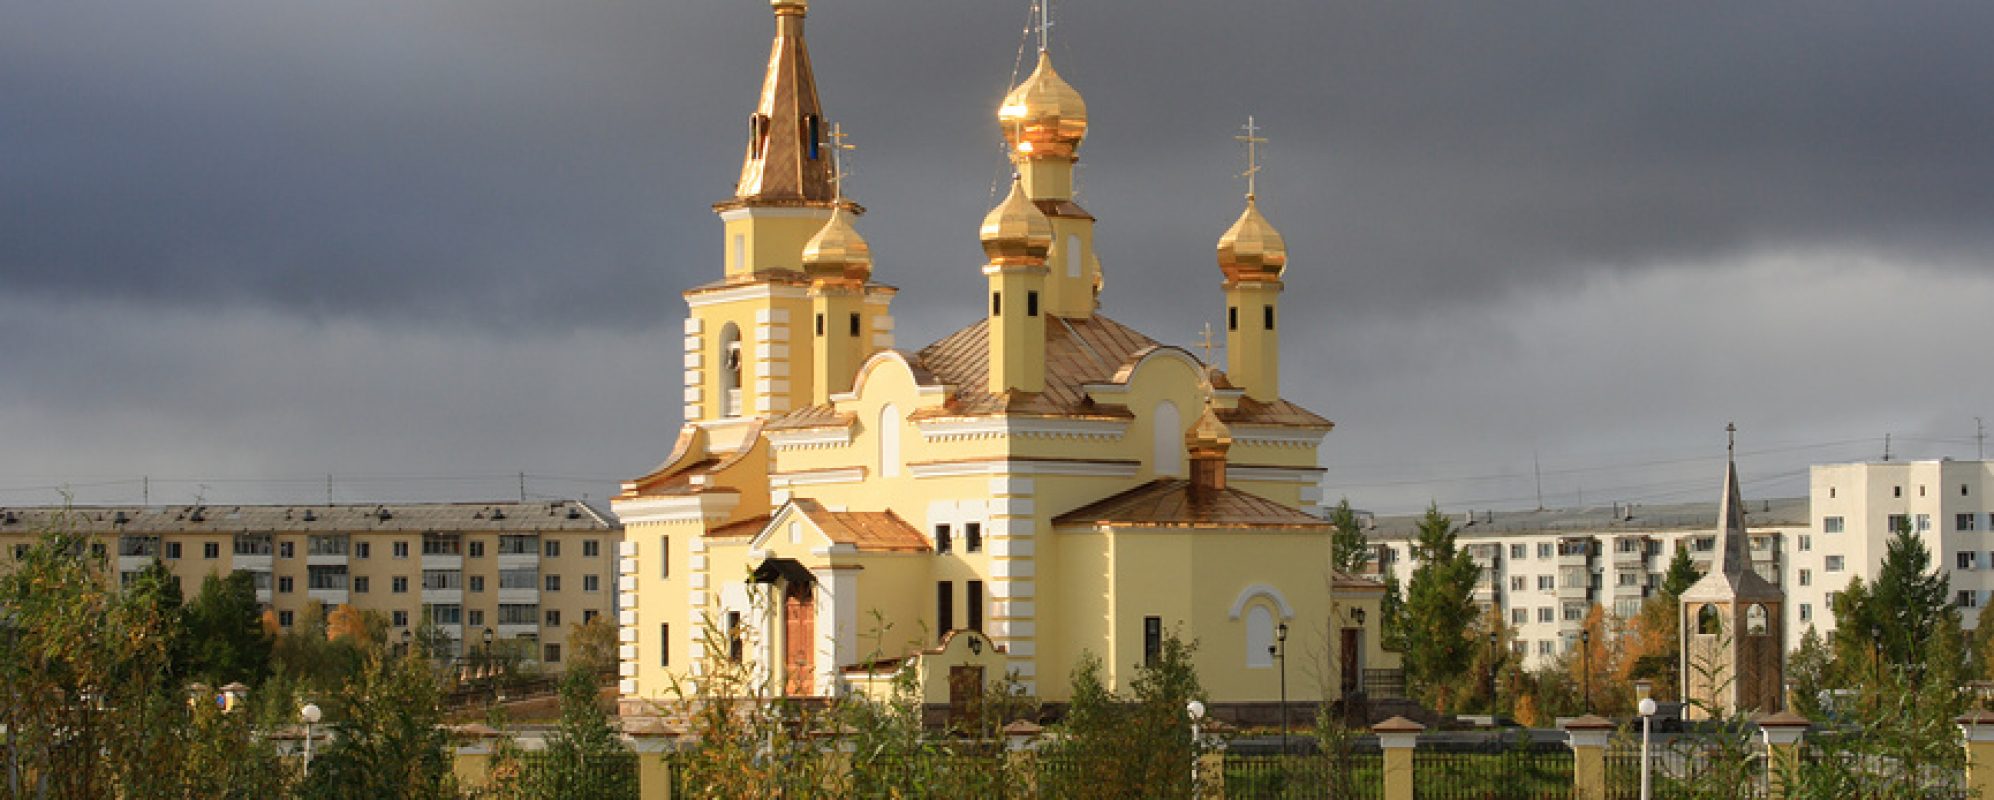 Фотографии достопримечательности Церковь Николая Чудотворца